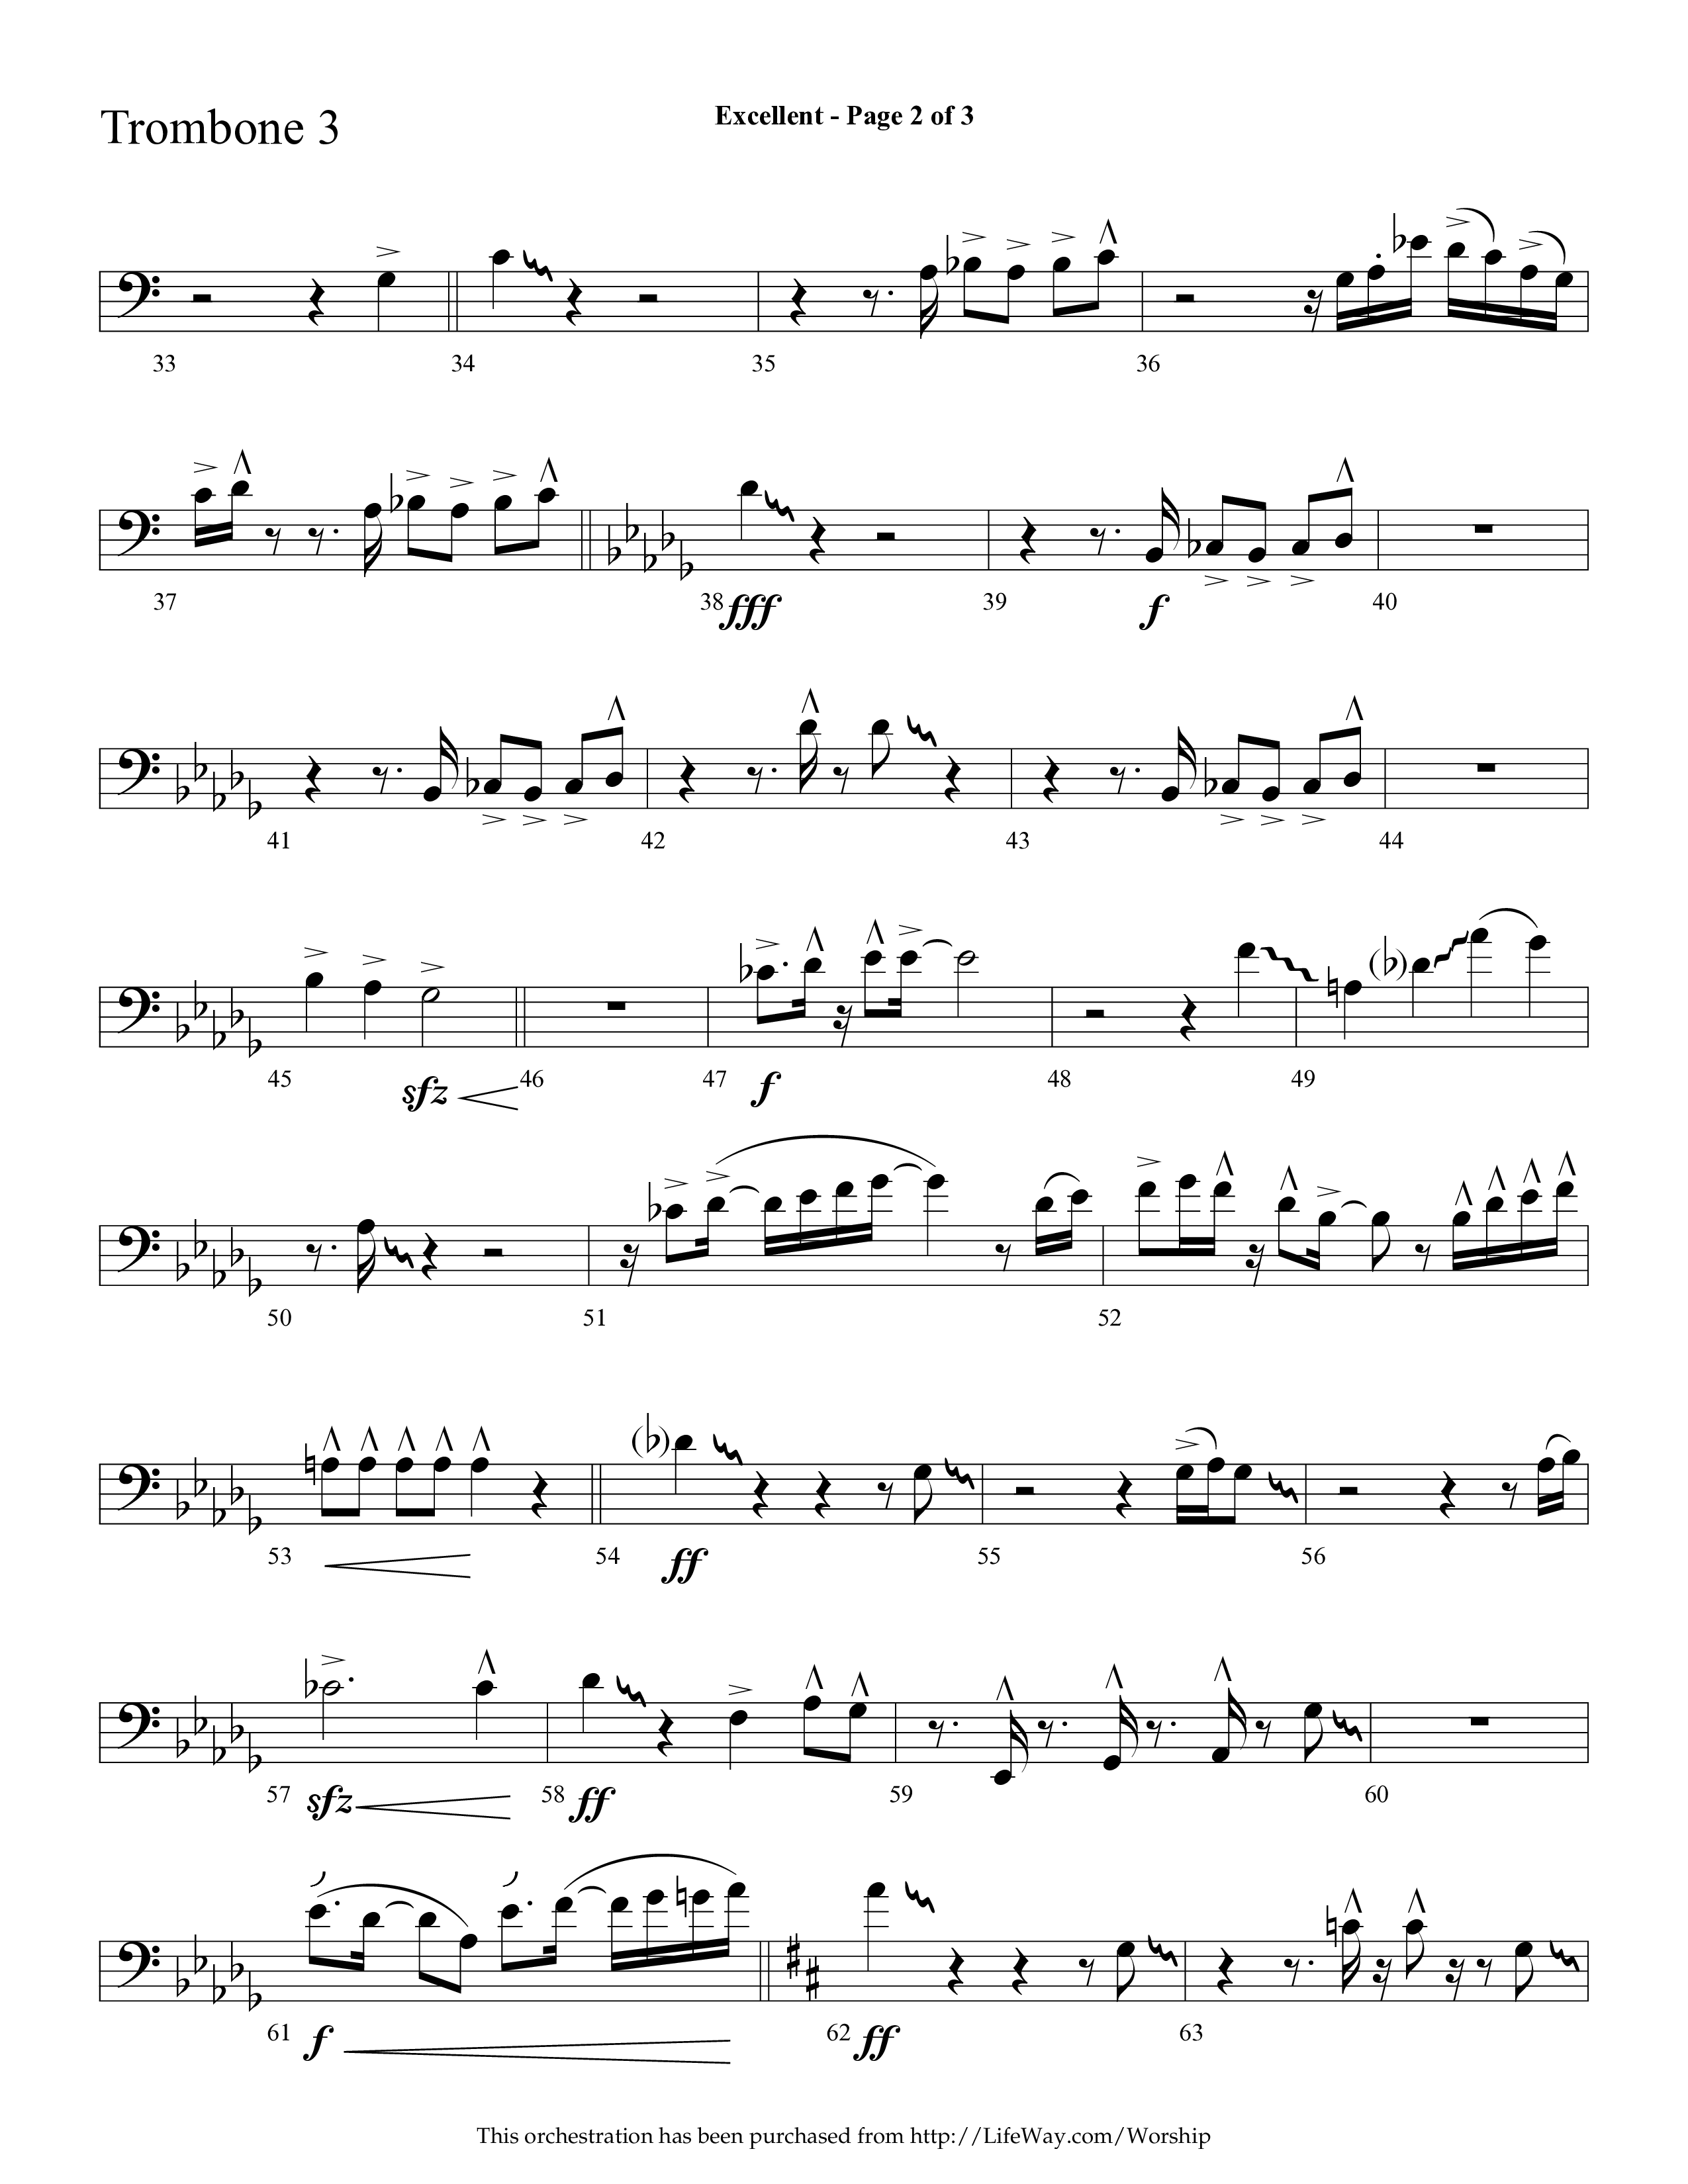 Excellent (Choral Anthem SATB) Trombone 3 (Lifeway Choral / Arr. Cliff Duren)